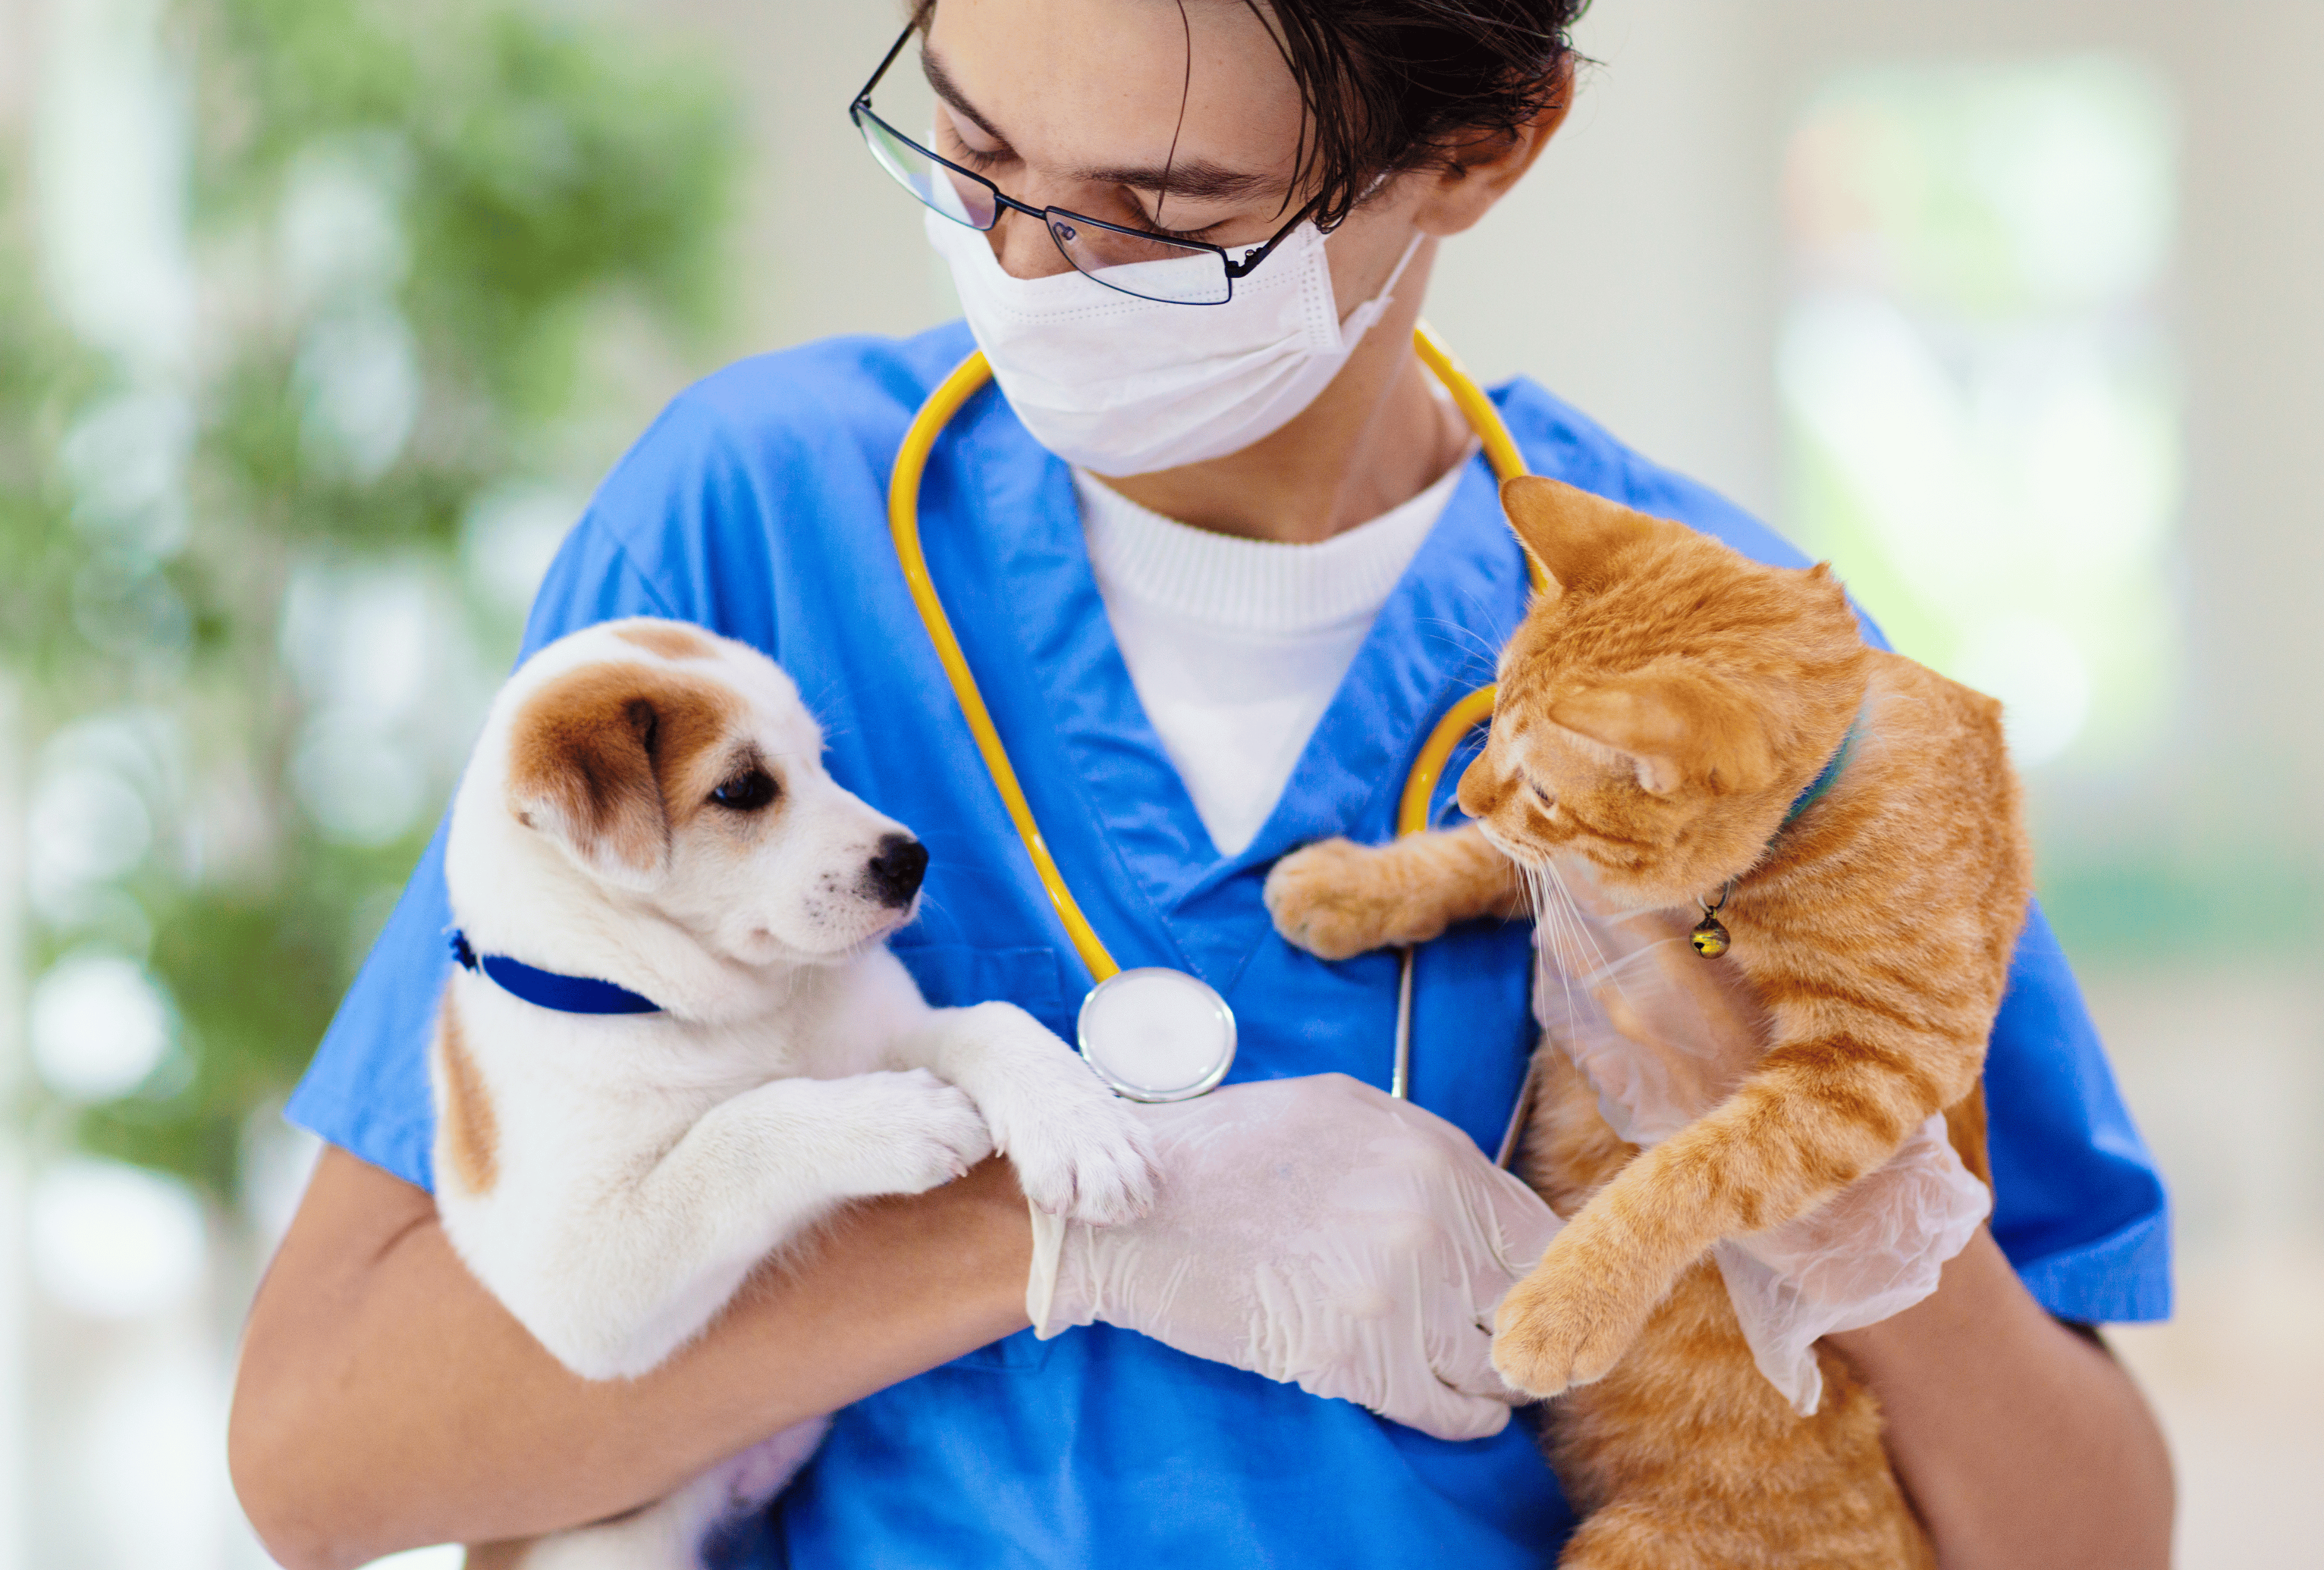 huisdierenverzekering, huisdierverzekering, verzekering huisdier, verzekering huisdieren, hondenverzekering, kattenverzekering, hondverzekering, katverzekering, verzekering kat, verzekering hond